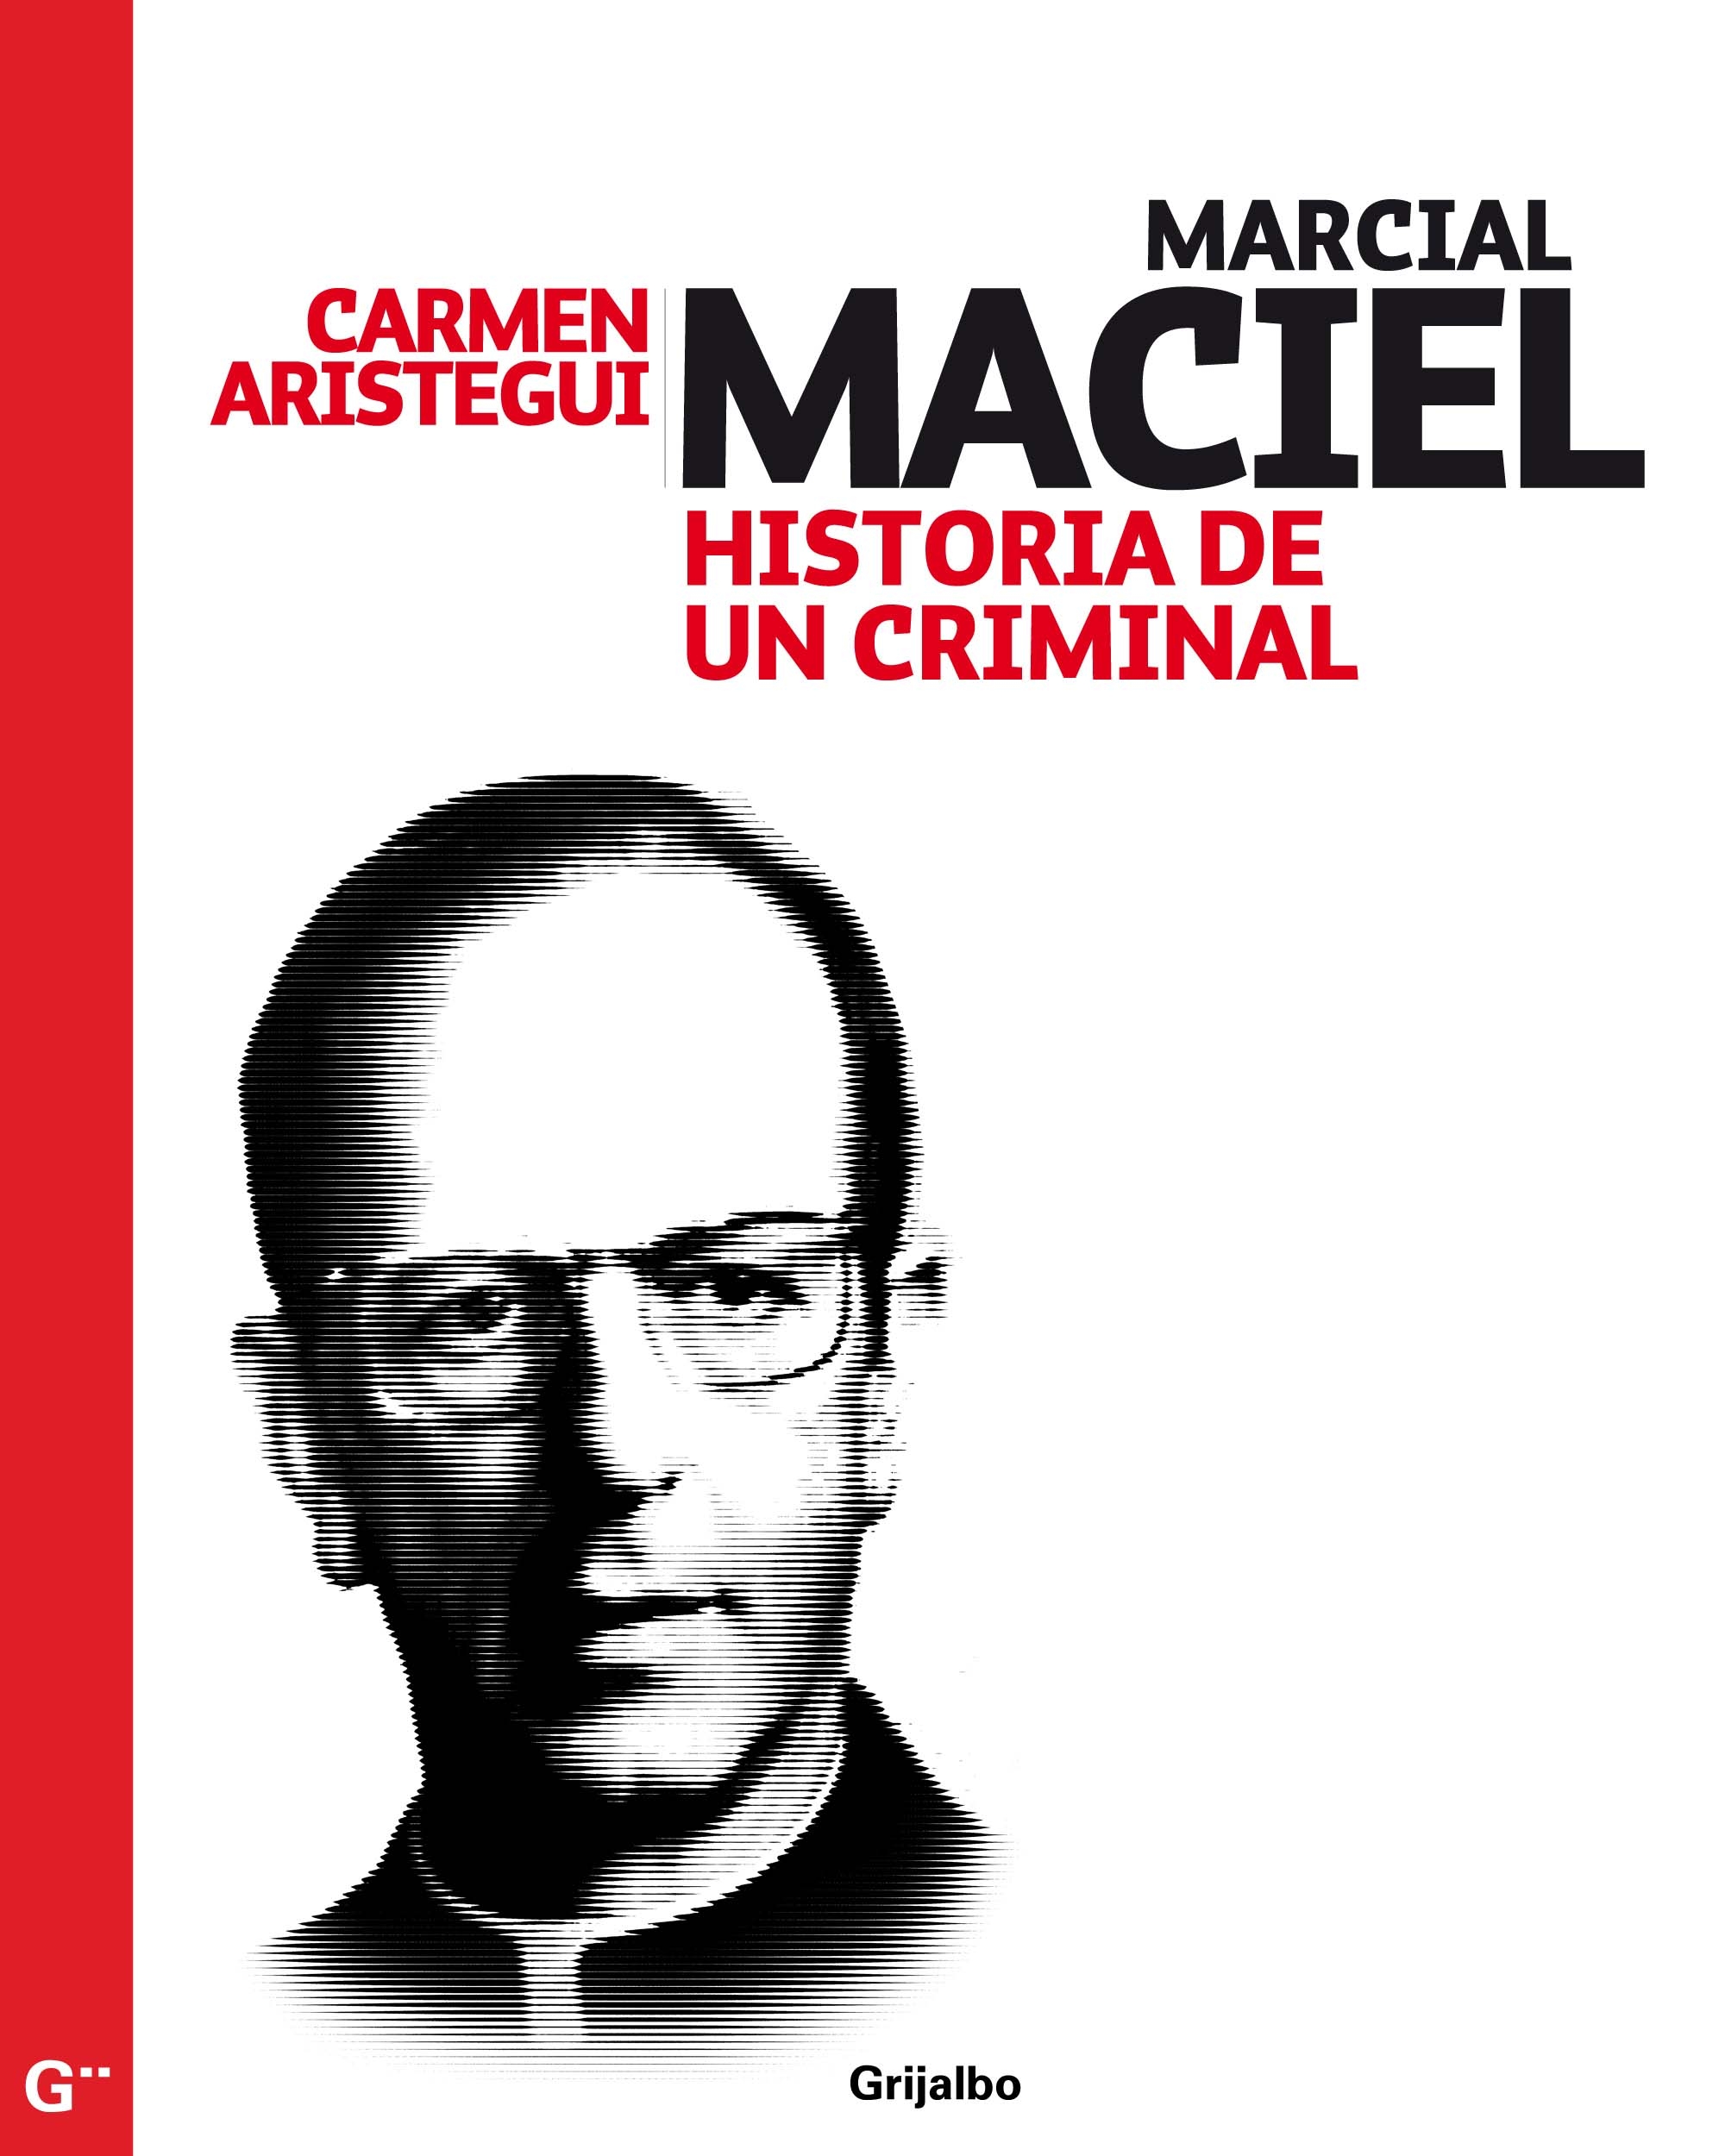 Marcial Maciel :: Libelista